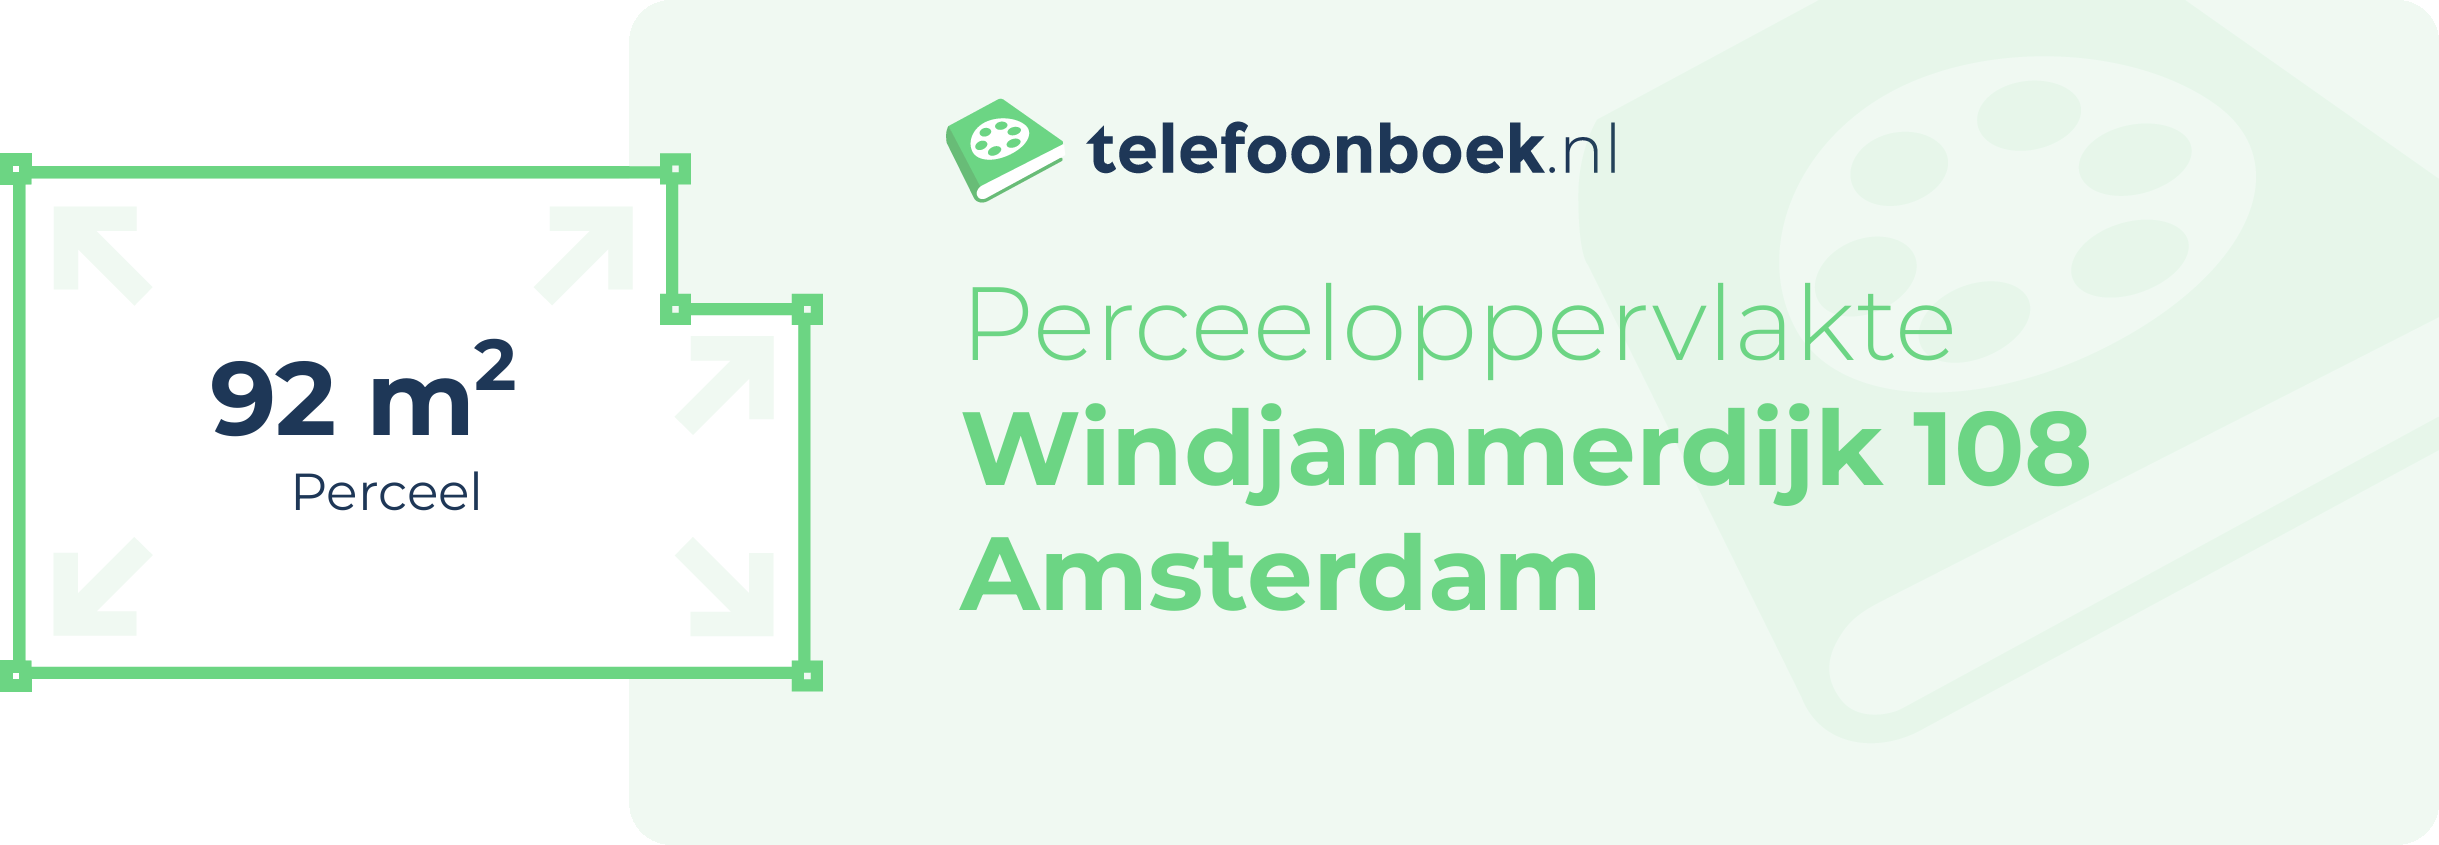 Perceeloppervlakte Windjammerdijk 108 Amsterdam